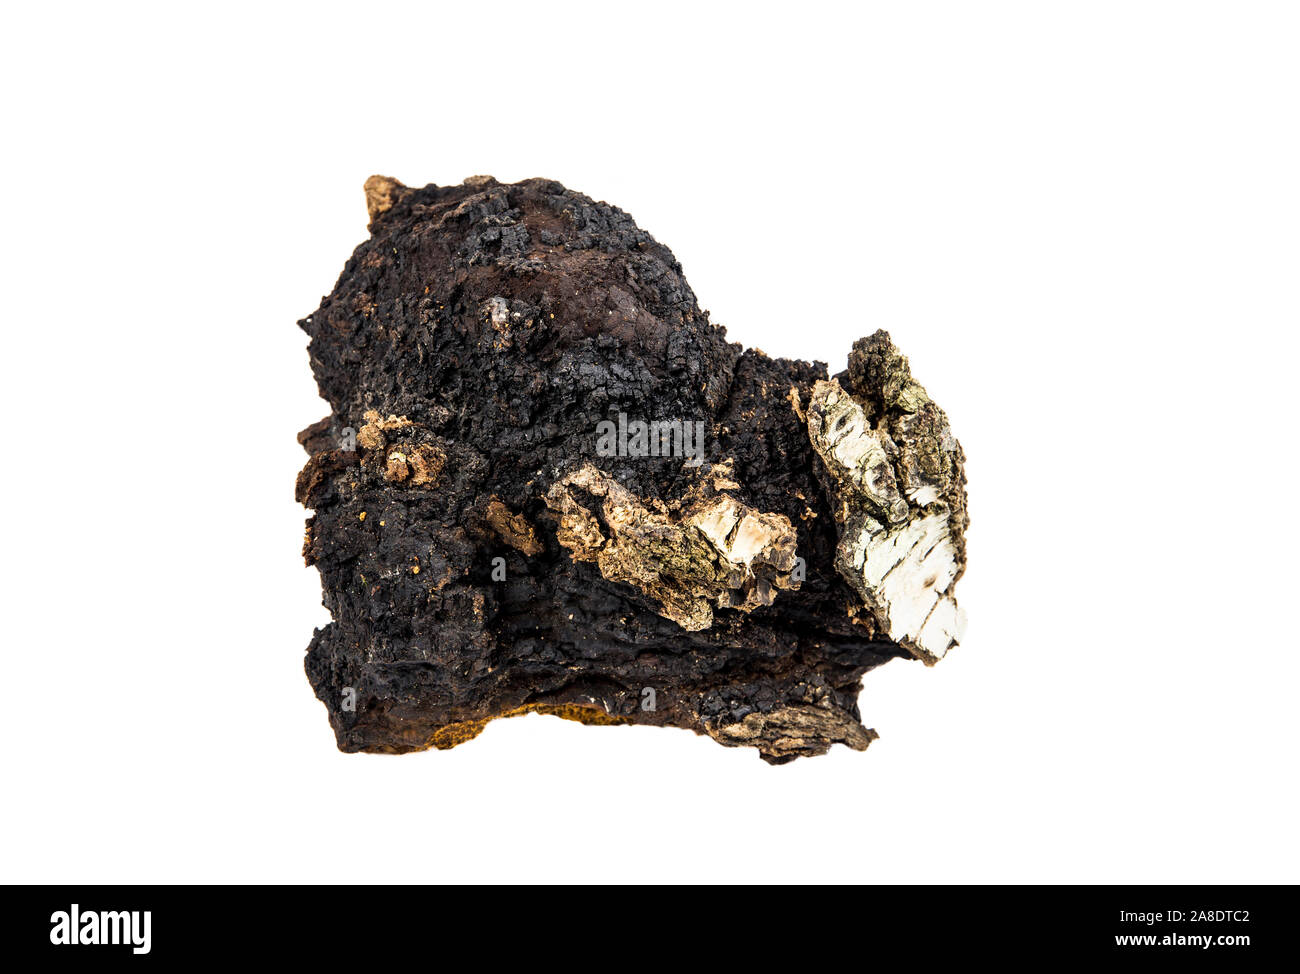 Plus de 20 ans grand morceau de matière organique naturelle sauvage champignon Inonotus obliquus chaga, isolé sur fond blanc. Recueillies auprès de Birch Tree Trunk dans Banque D'Images